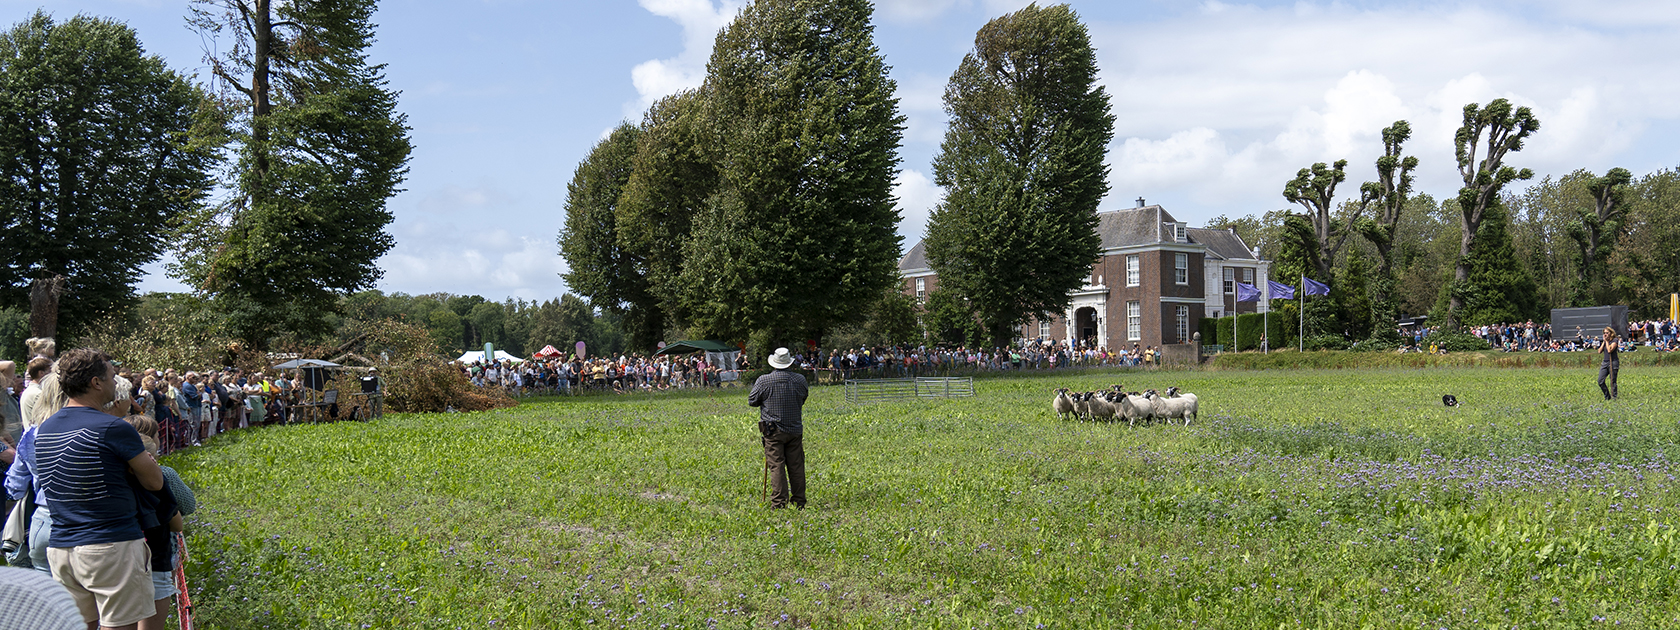 Grasveld voor Chateau Marquette waar een kring mensen omheen staat. In het midden staat een schapenherder met een paar schapen.